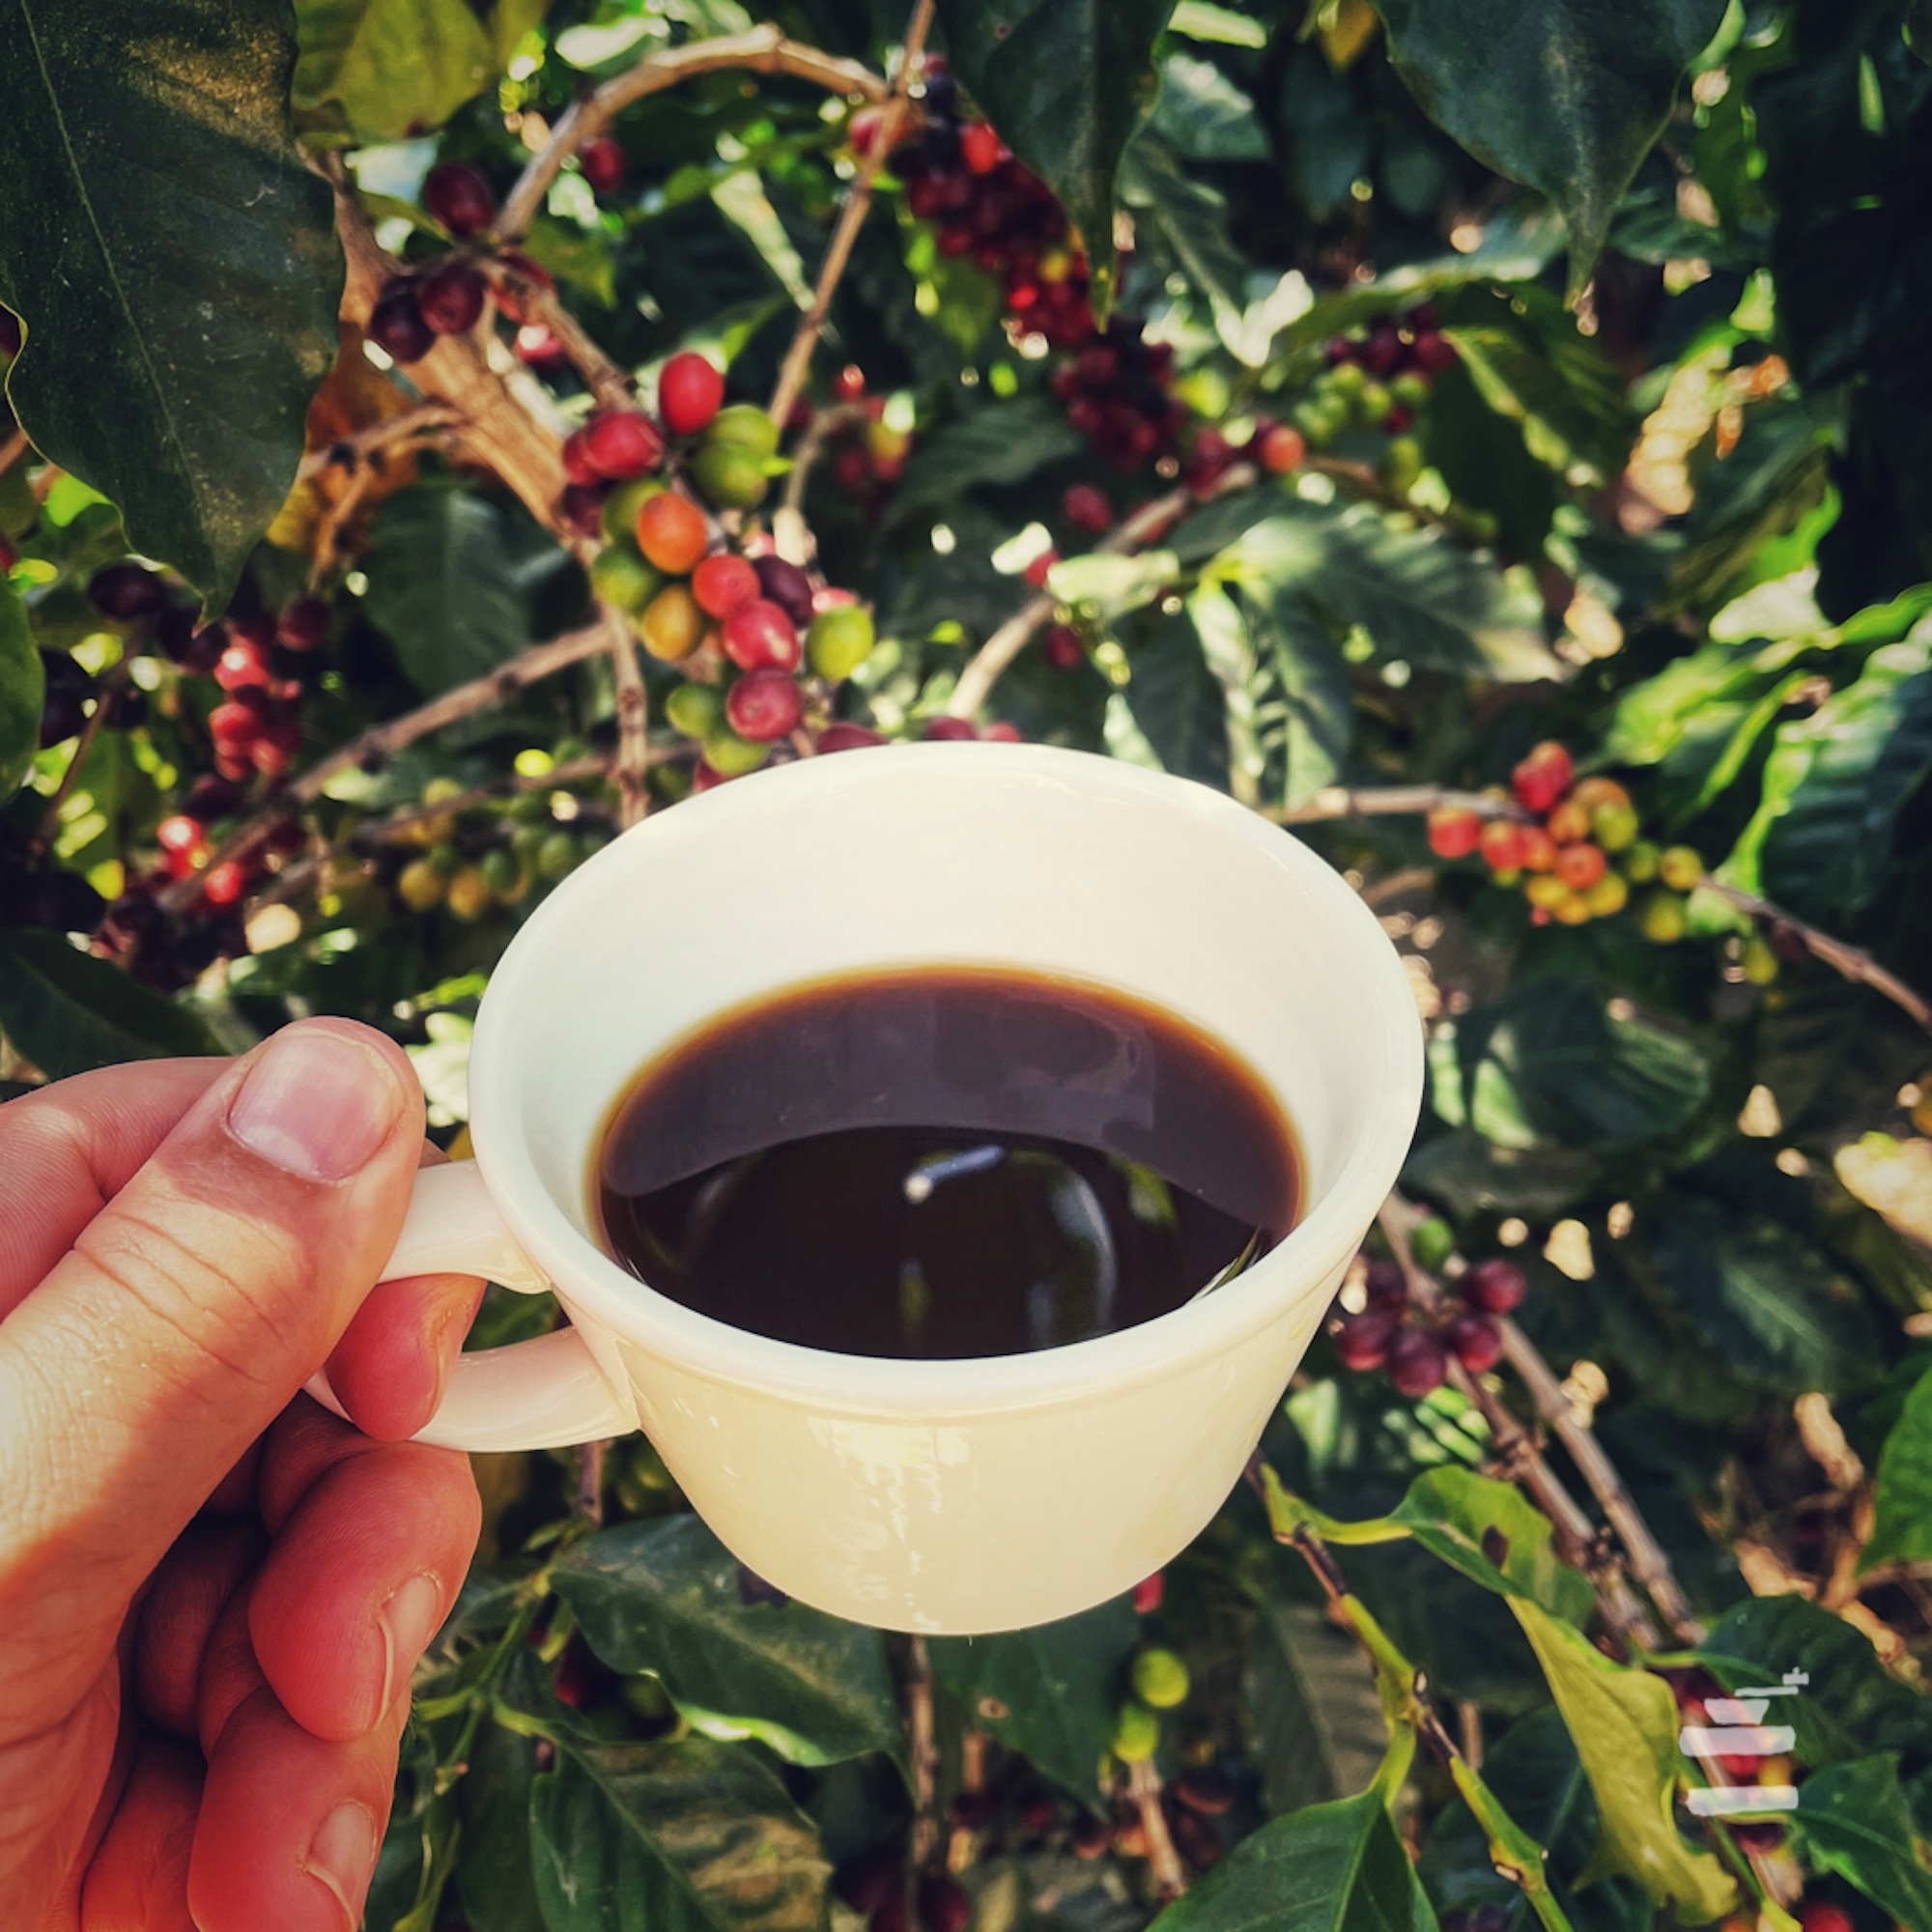 Eine Tasse Kaffee wird vor einen Kaffeebaum mit Früchten gehalten, transparenter geht es nicht.